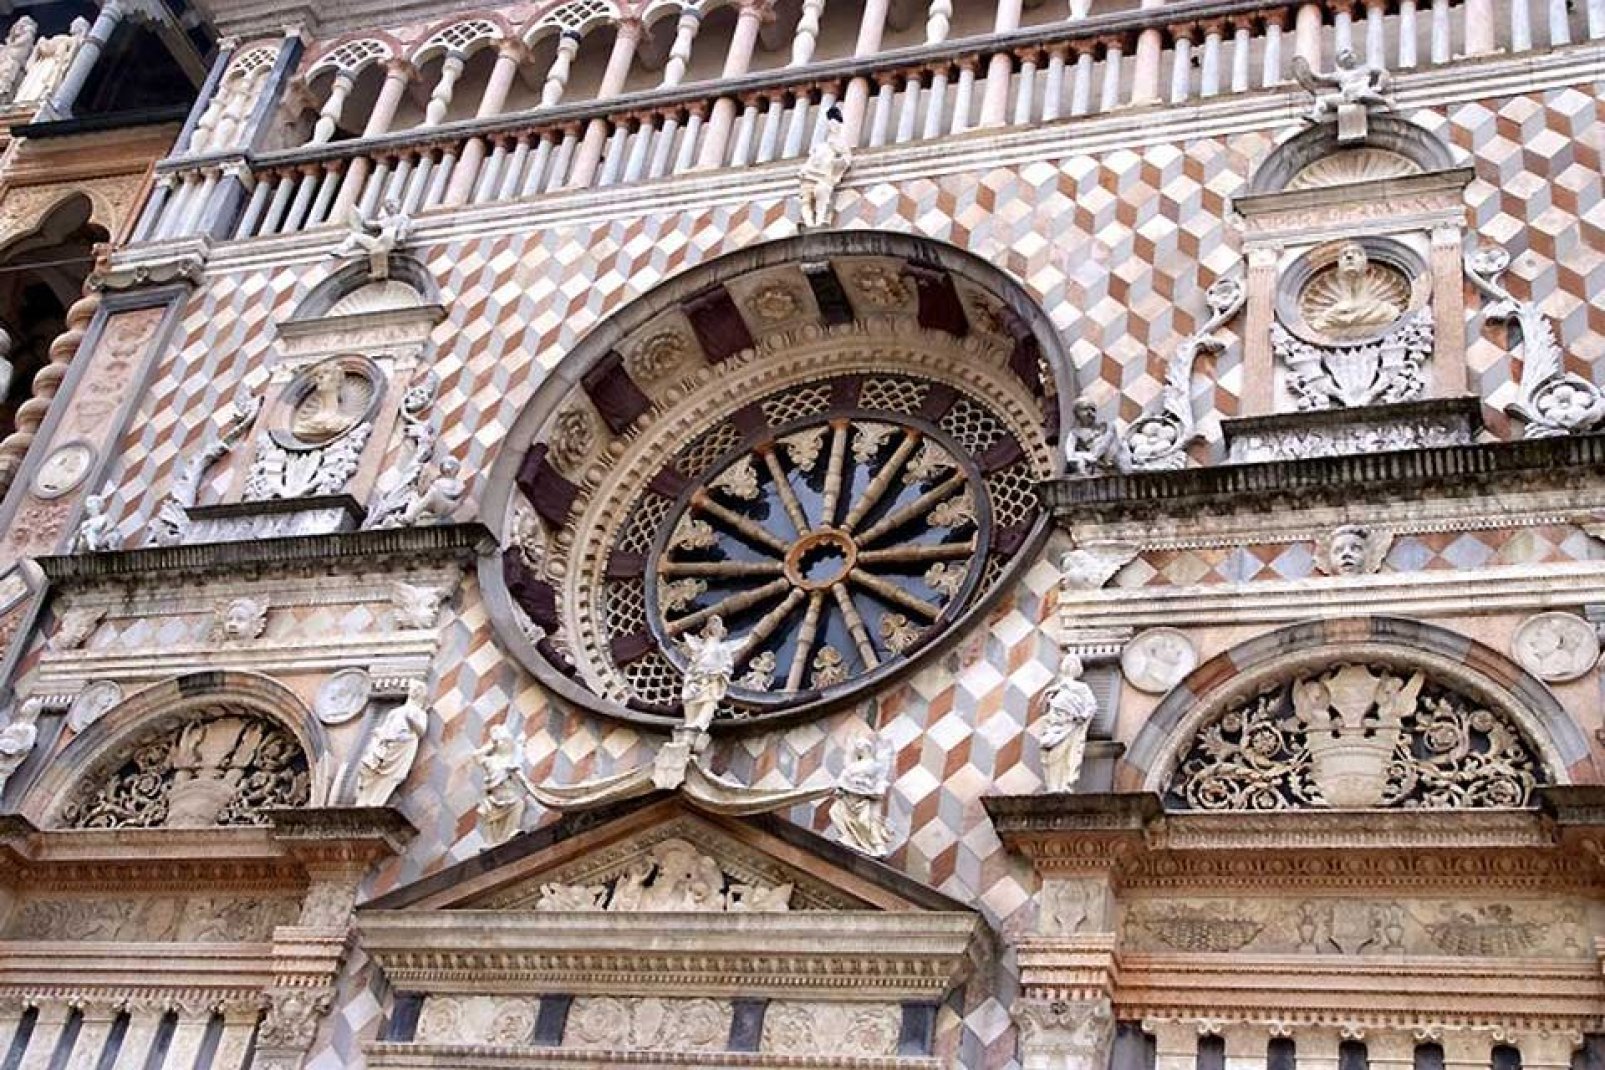 La Chapelle Colleoni, un joyau de la Renaissance, adossée à la Basilique Santa Maria Maggiore, fut commanditée par Bartolomeo Colleoni pour servir de mausolée pour lui-même et sa fille.